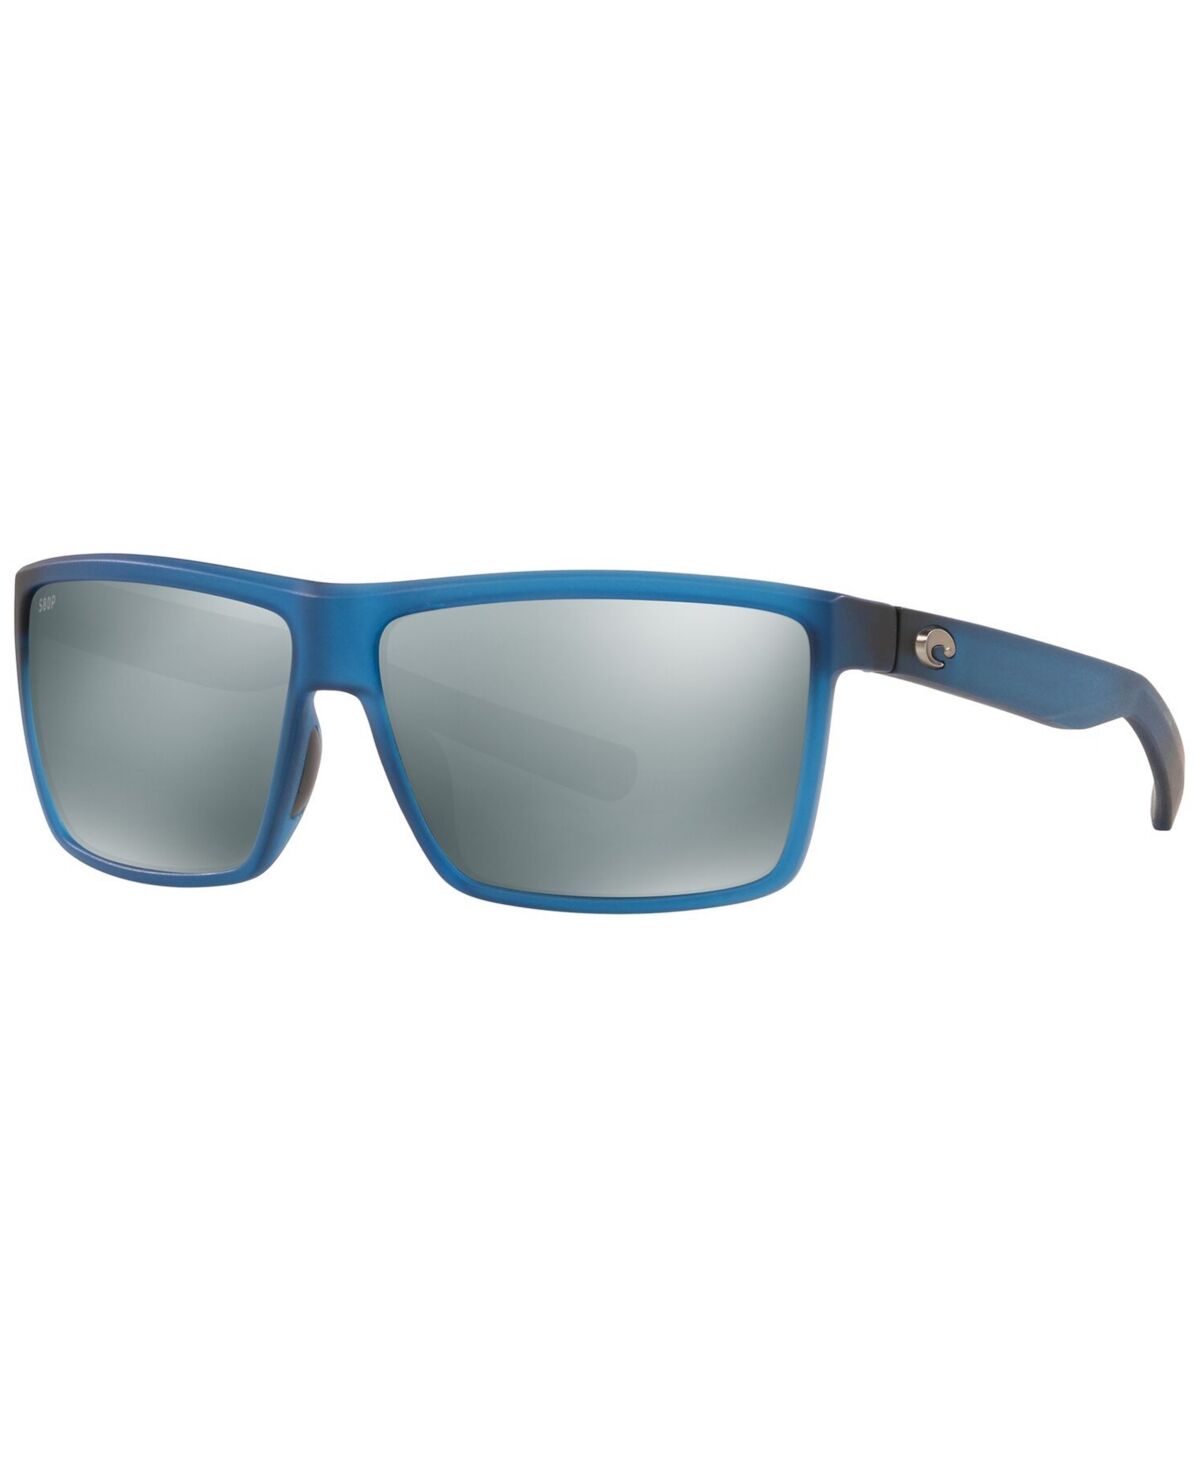 Costa Del Mar Men's Polarized Sunglasses, Rinconcito 60 - BLUE/GREY POL